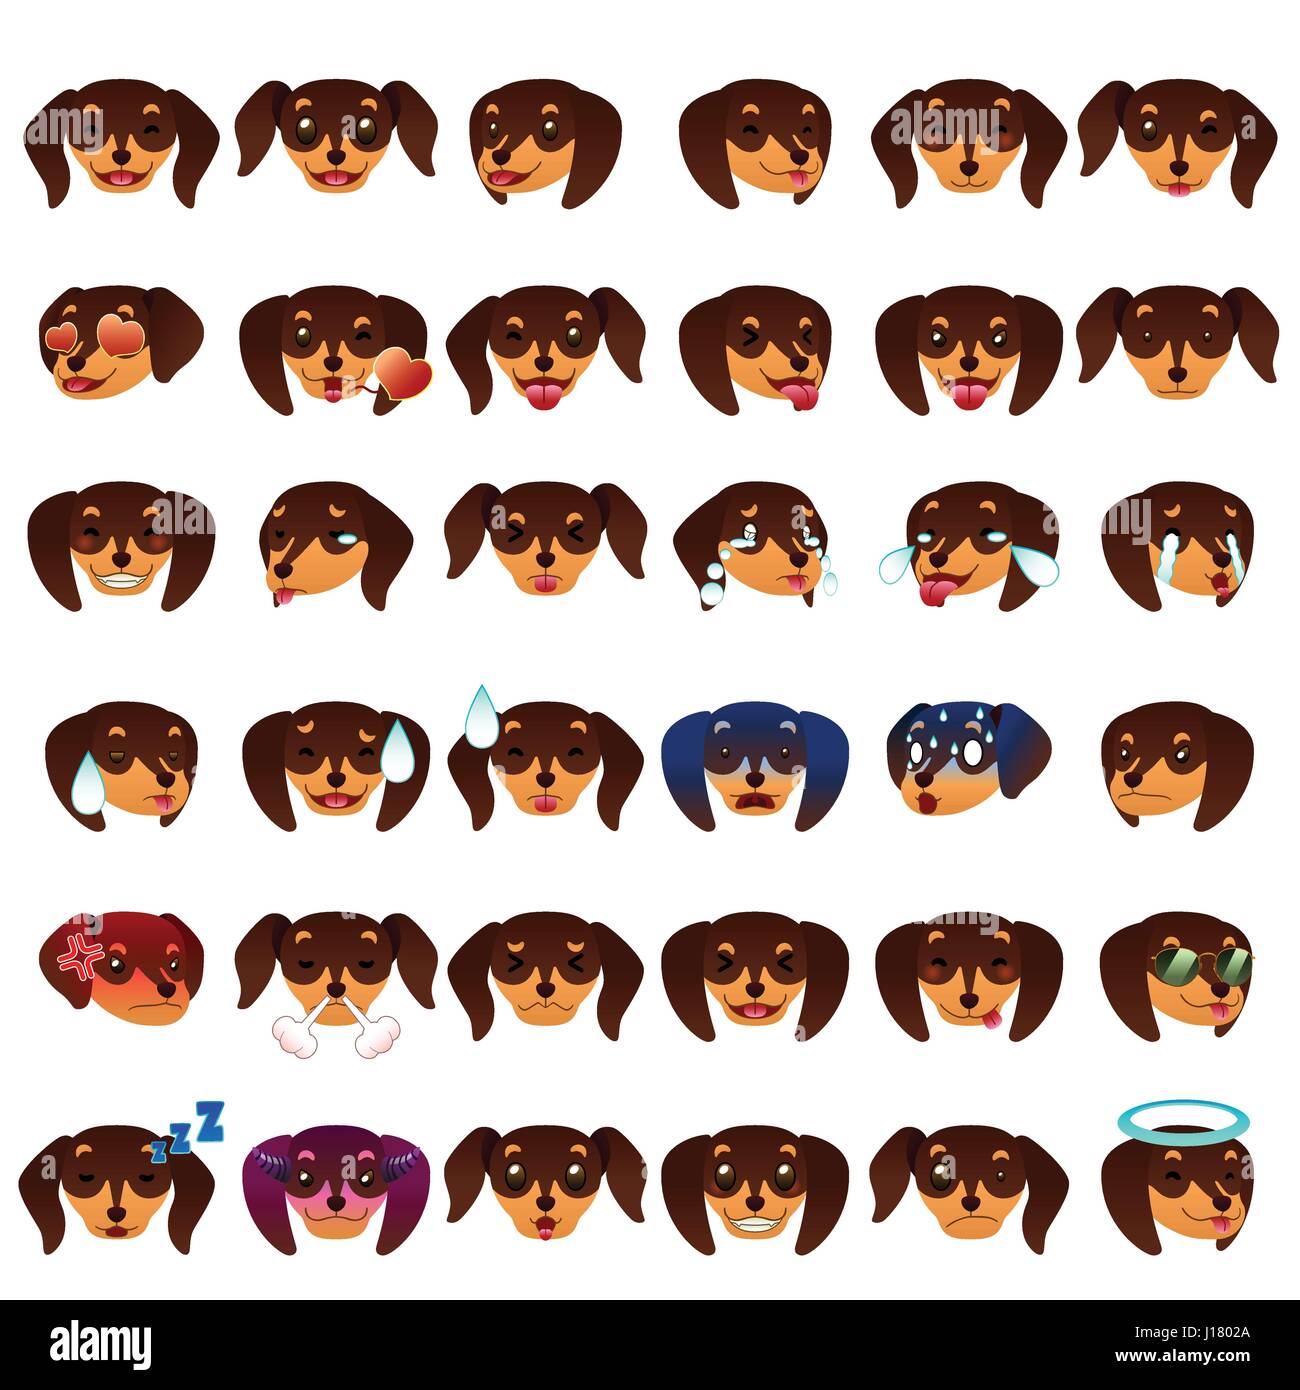 Eine Vektor-Illustration der Dackel Hund Emoji Emoticons Ausdruck  Stock-Vektorgrafik - Alamy